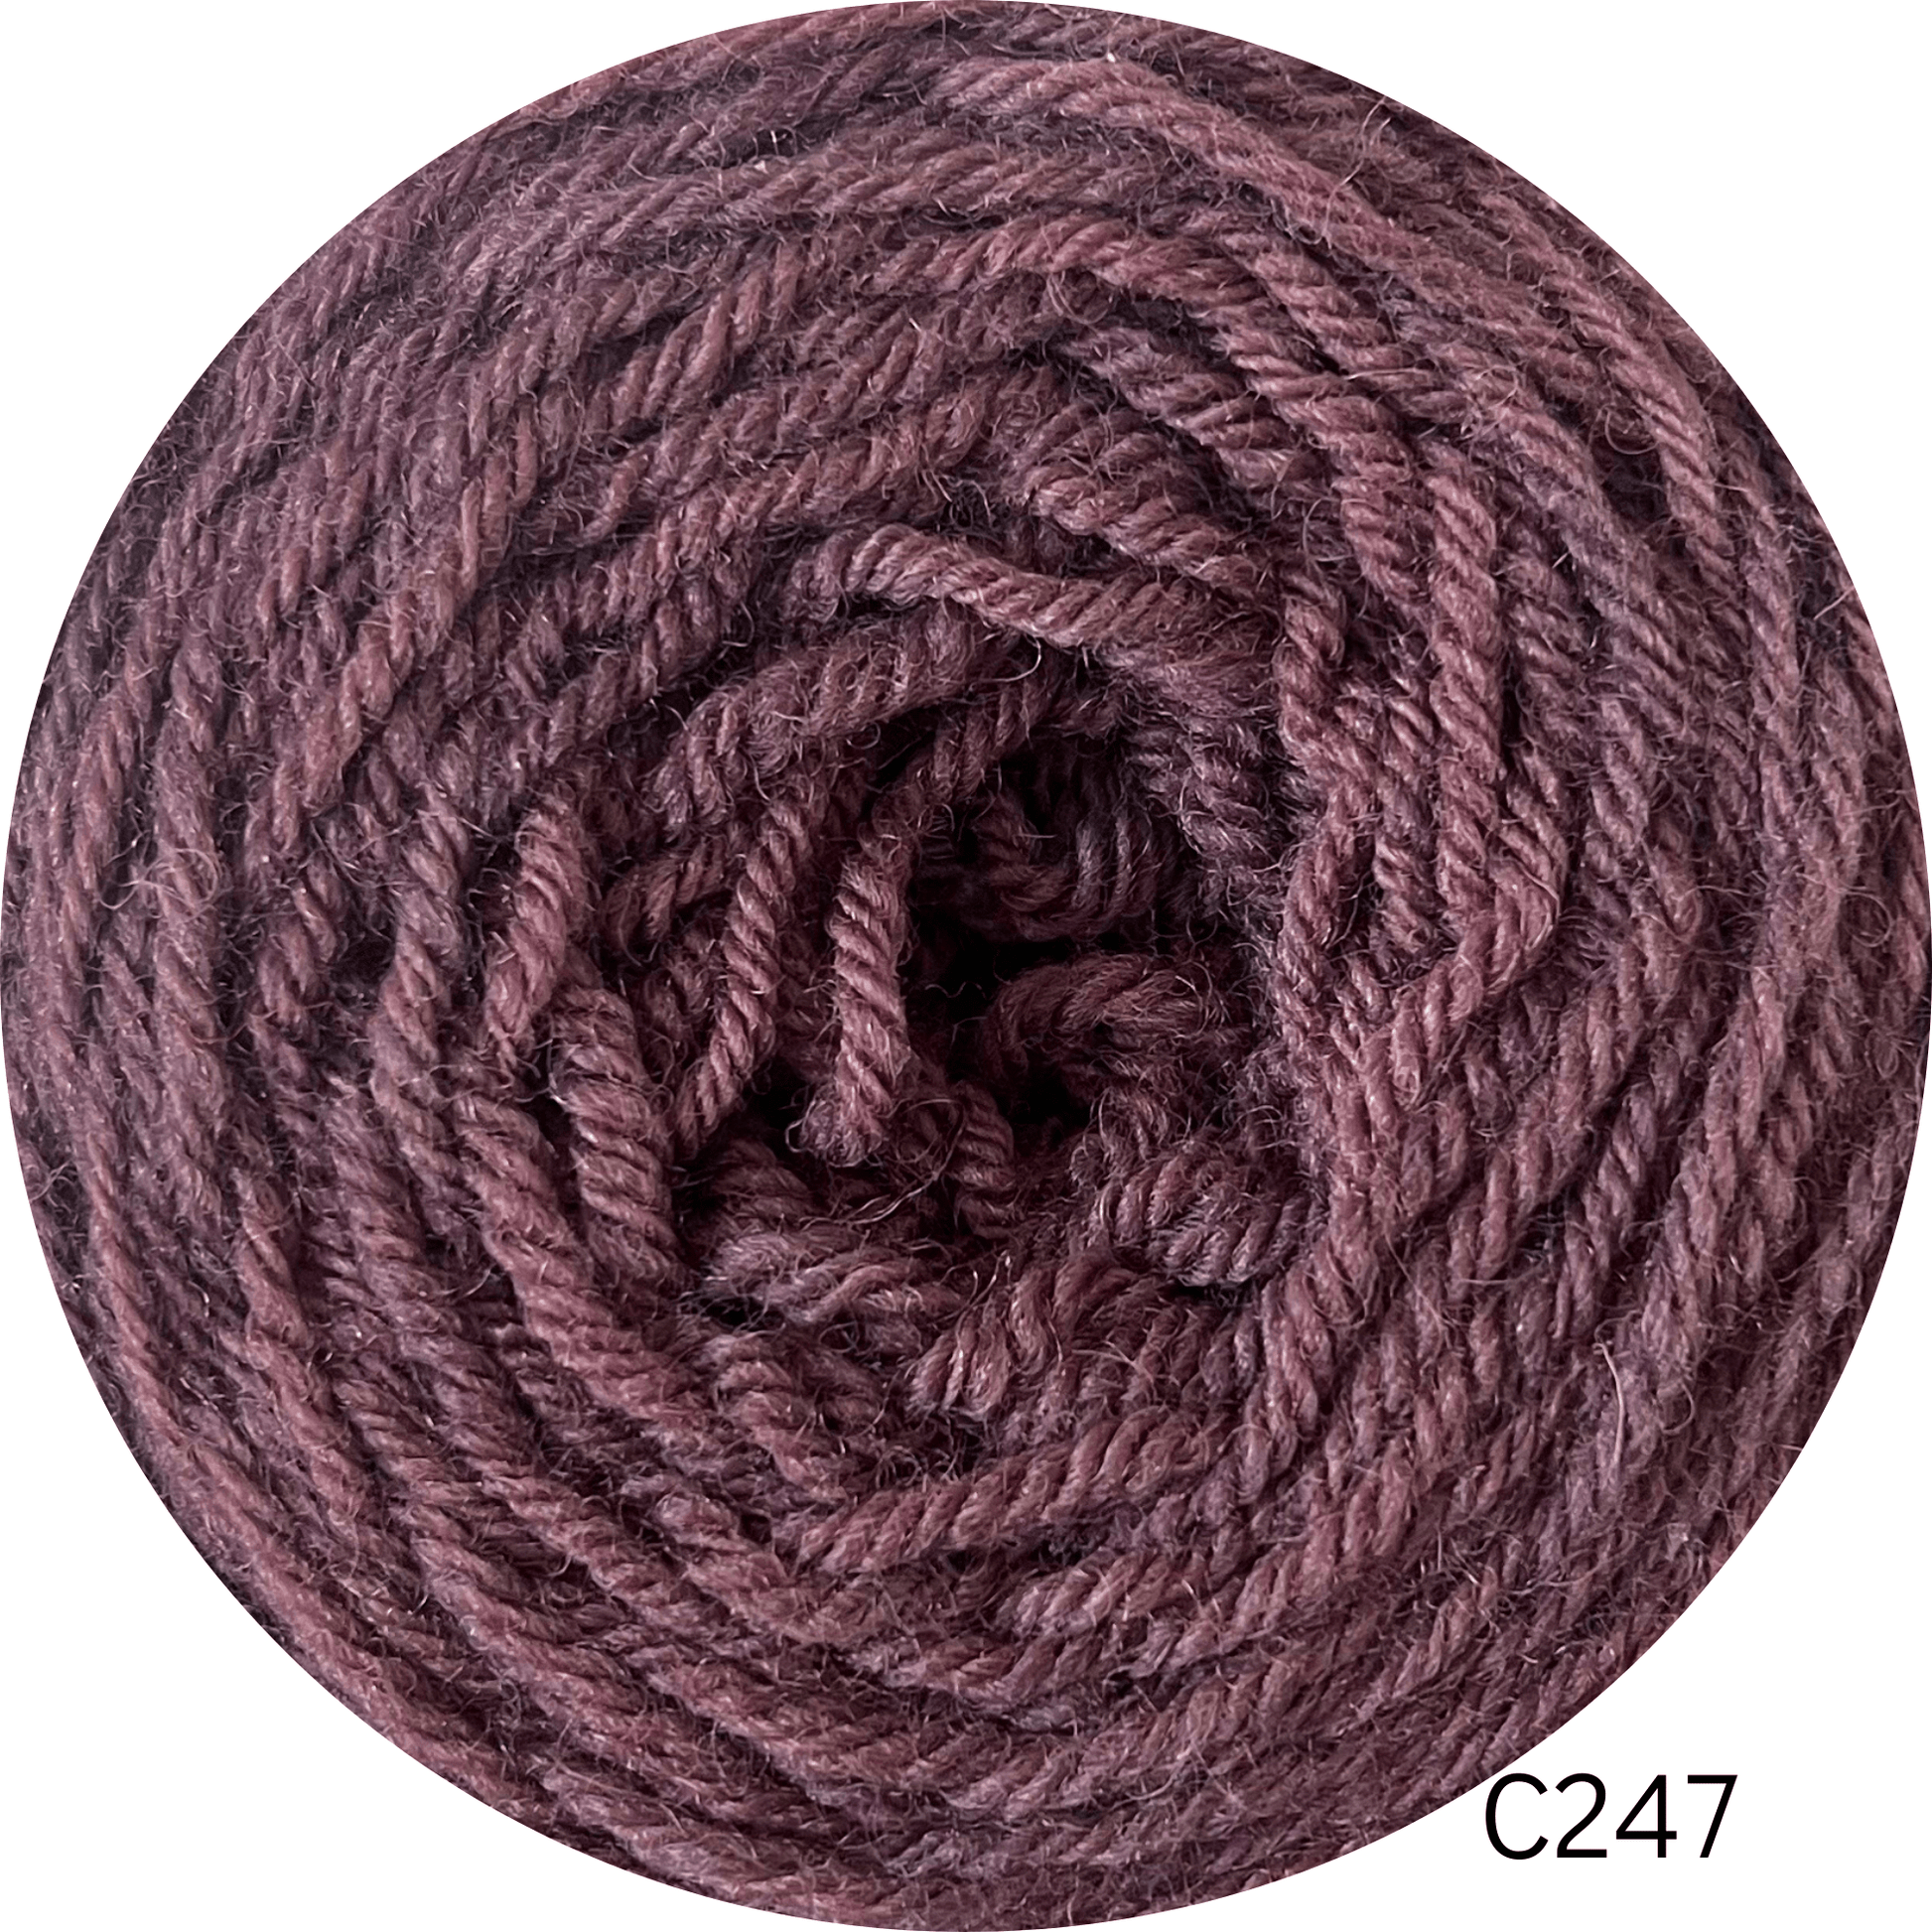 Coromina lana natural 20 grs C247 20GRS Atacama